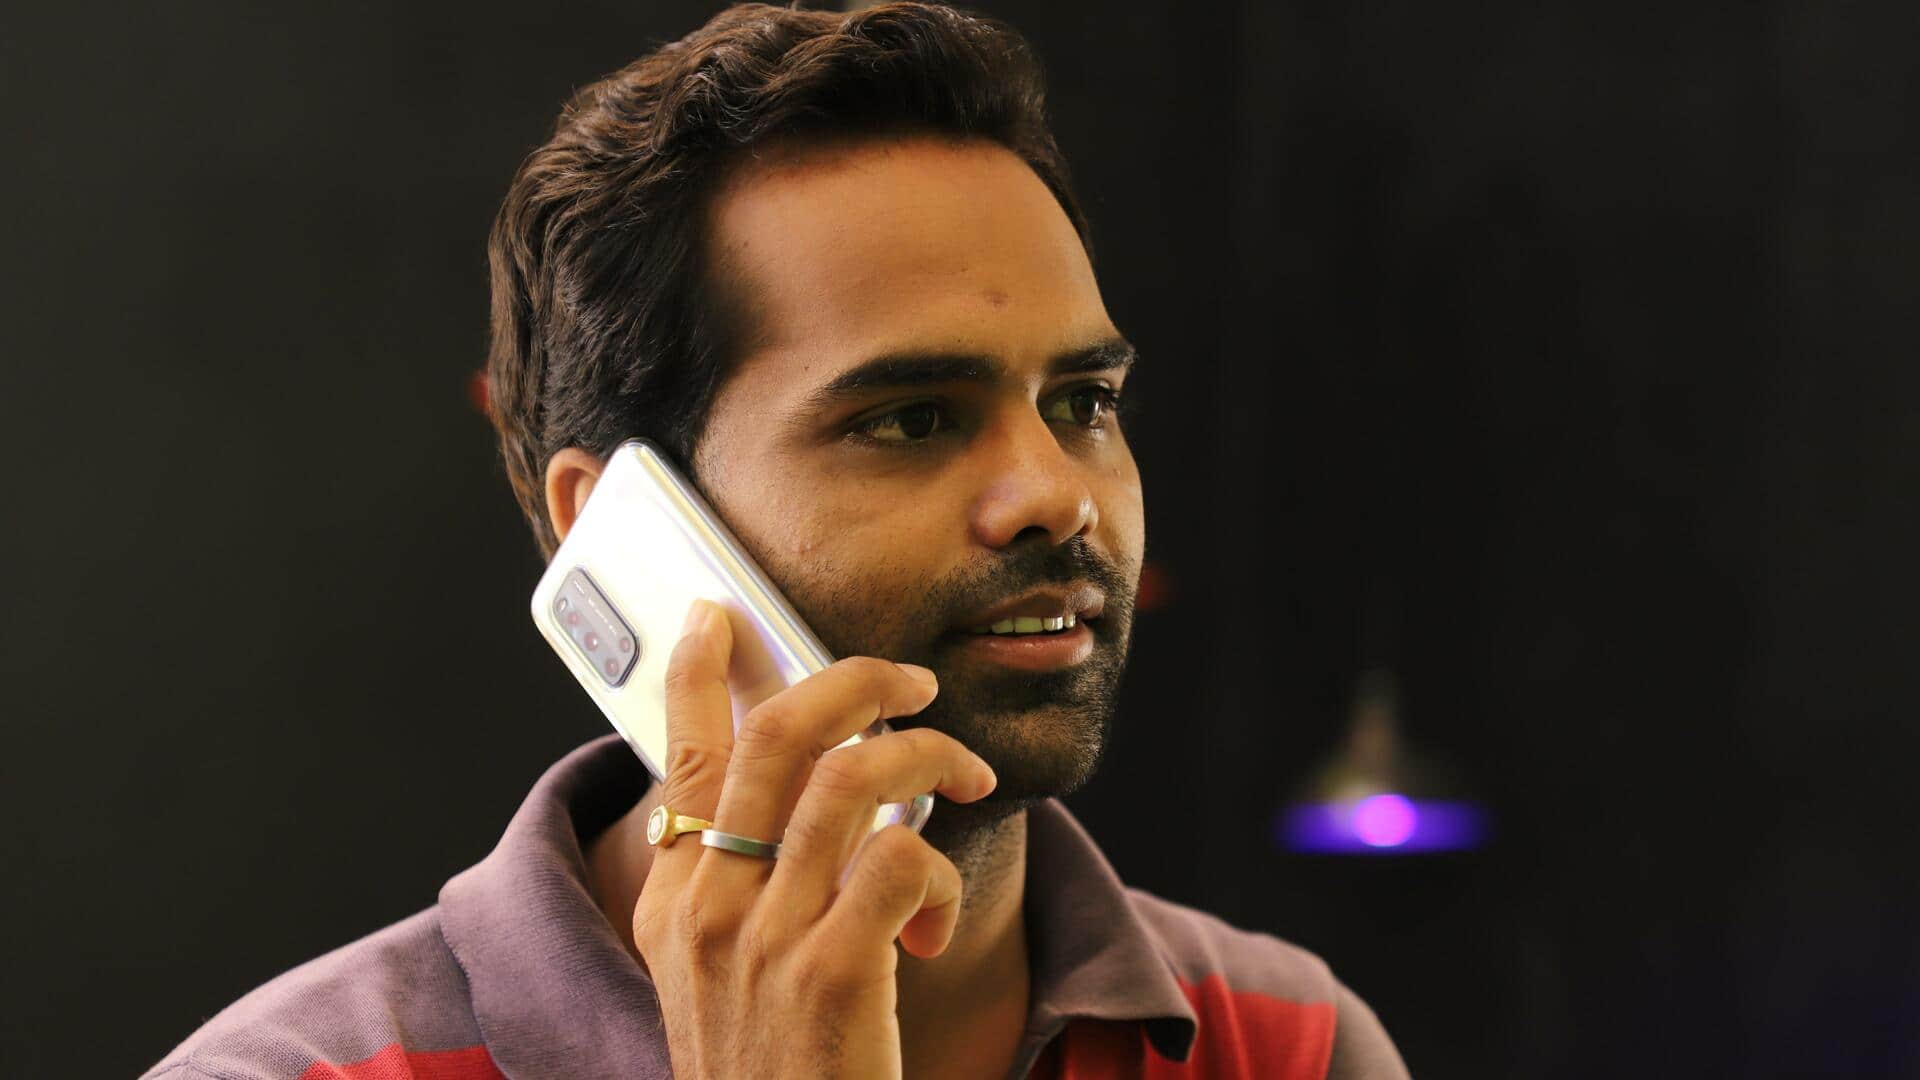 भारत में 69 प्रतिशत मोबाइल ग्राहक रोजाना कॉल ड्रॉप समस्या का करते हैं सामना- सर्वे